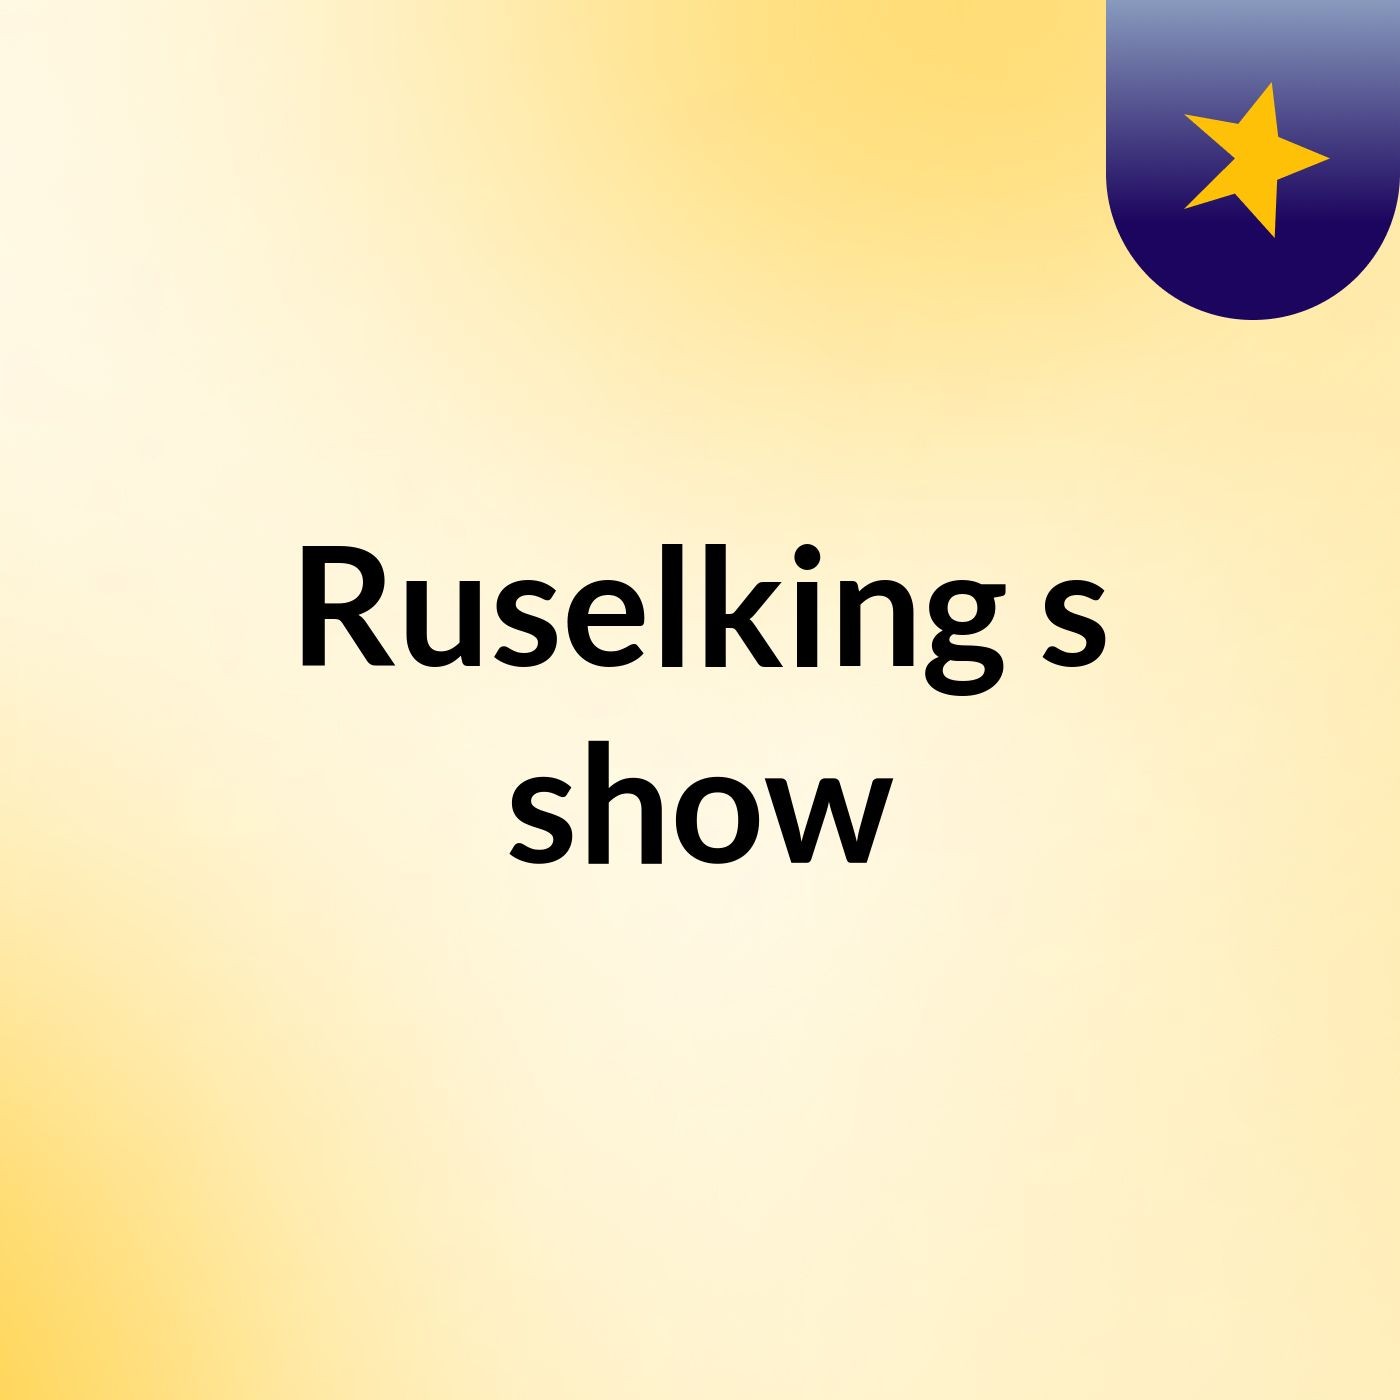 Ruselking's show